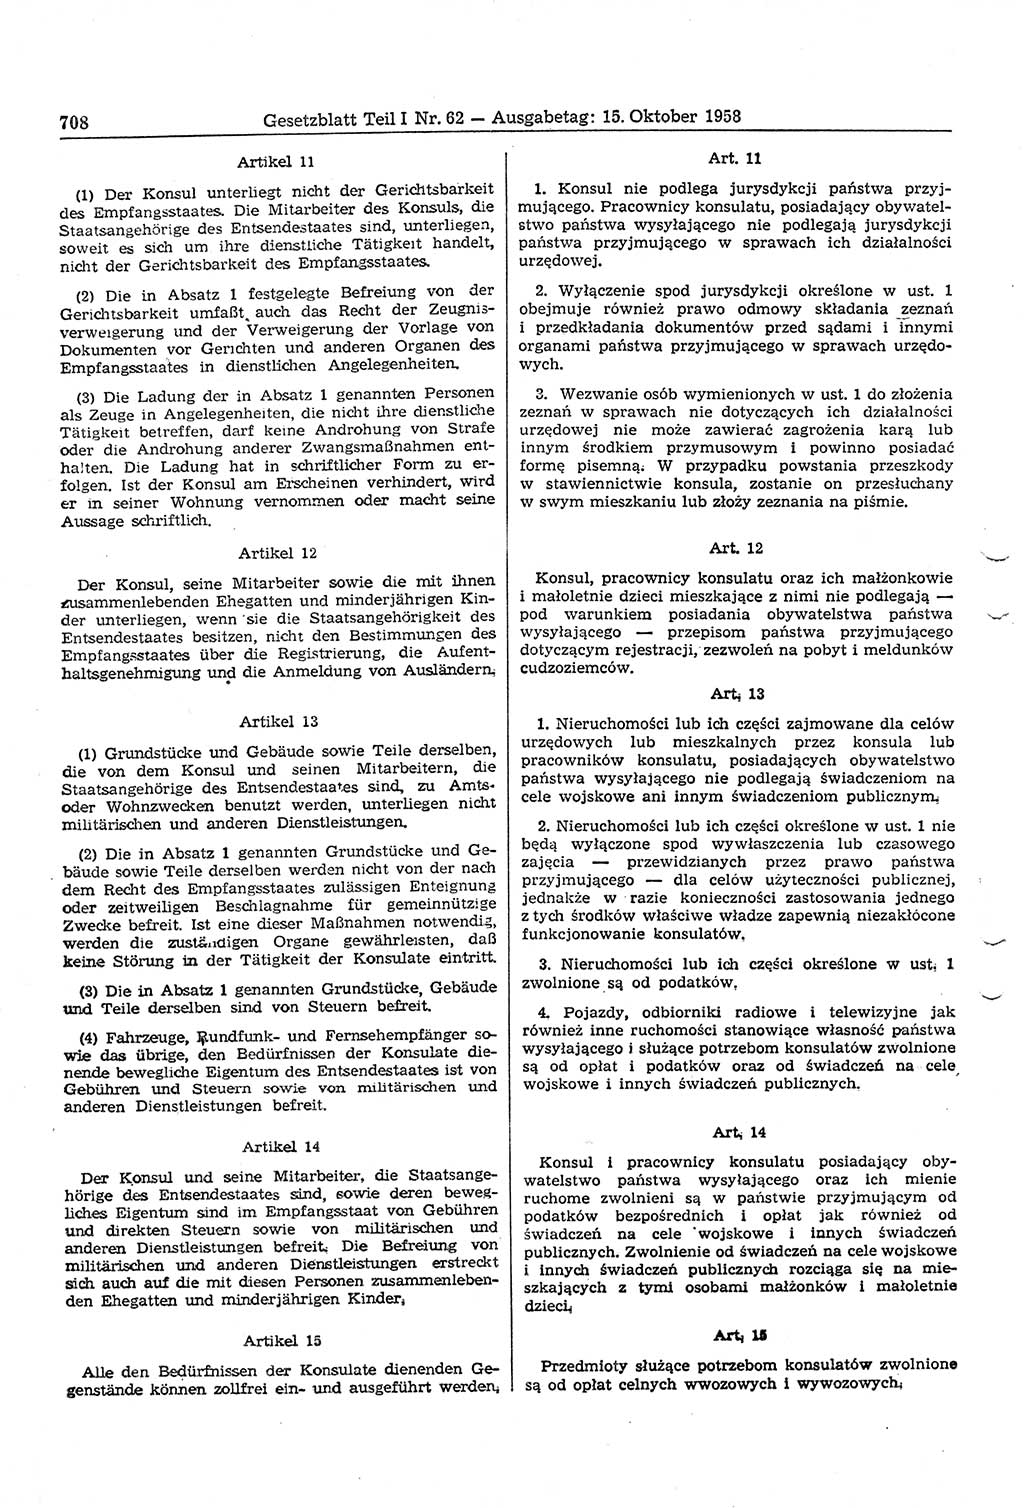 Gesetzblatt (GBl.) der Deutschen Demokratischen Republik (DDR) Teil Ⅰ 1958, Seite 708 (GBl. DDR Ⅰ 1958, S. 708)